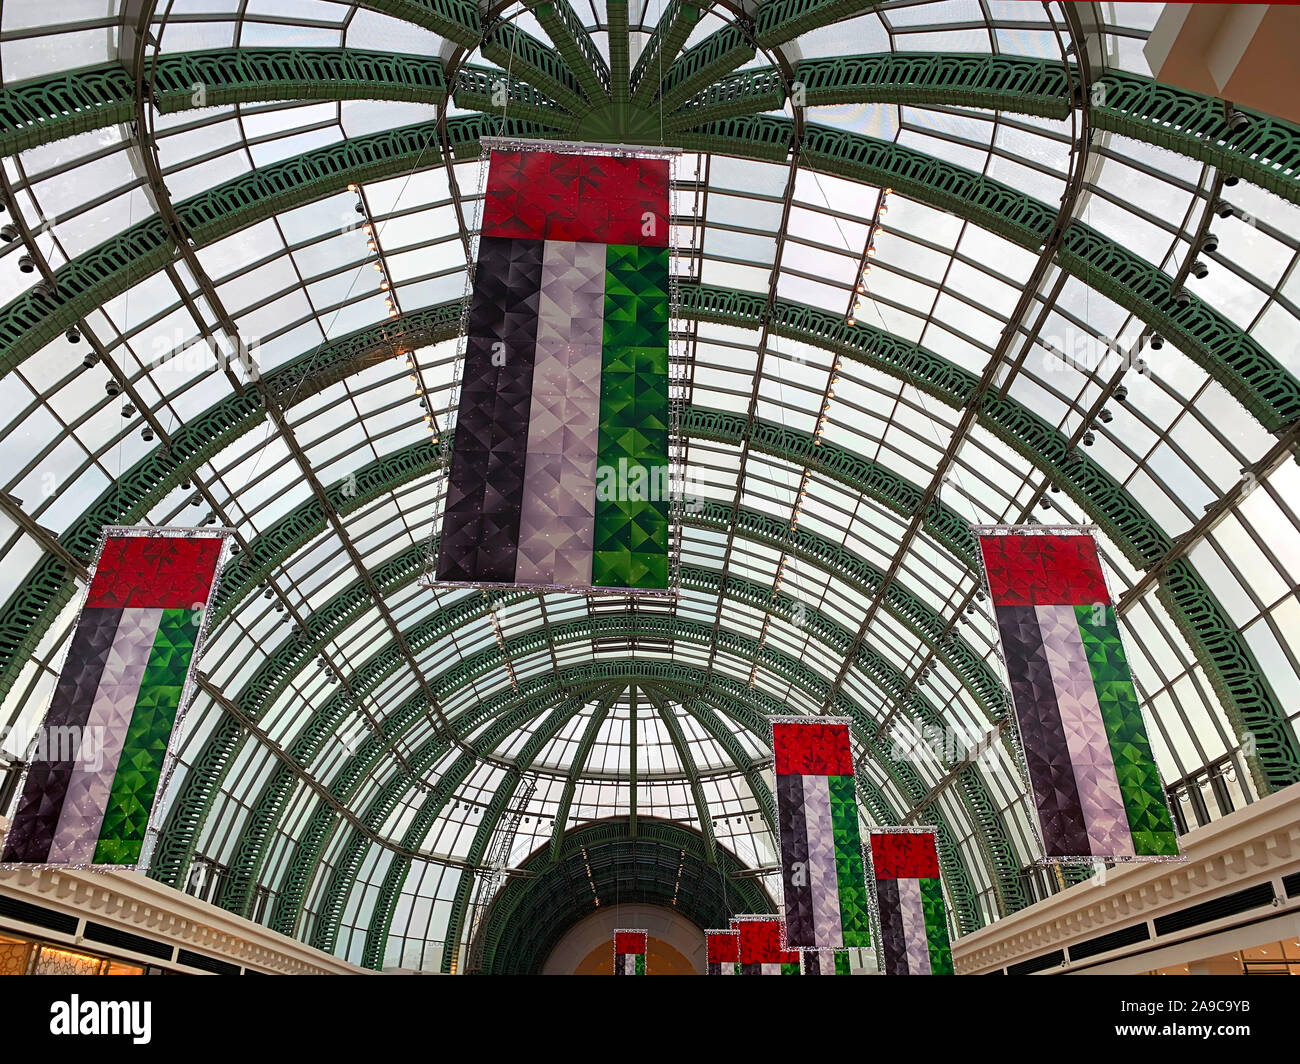 / Emiratos Árabes Unidos - Noviembre 10, 2019: decoraciones para el Día Nacional de los EAU en el mall. Las banderas nacionales de los EAU decoración. Día de la independencia. -